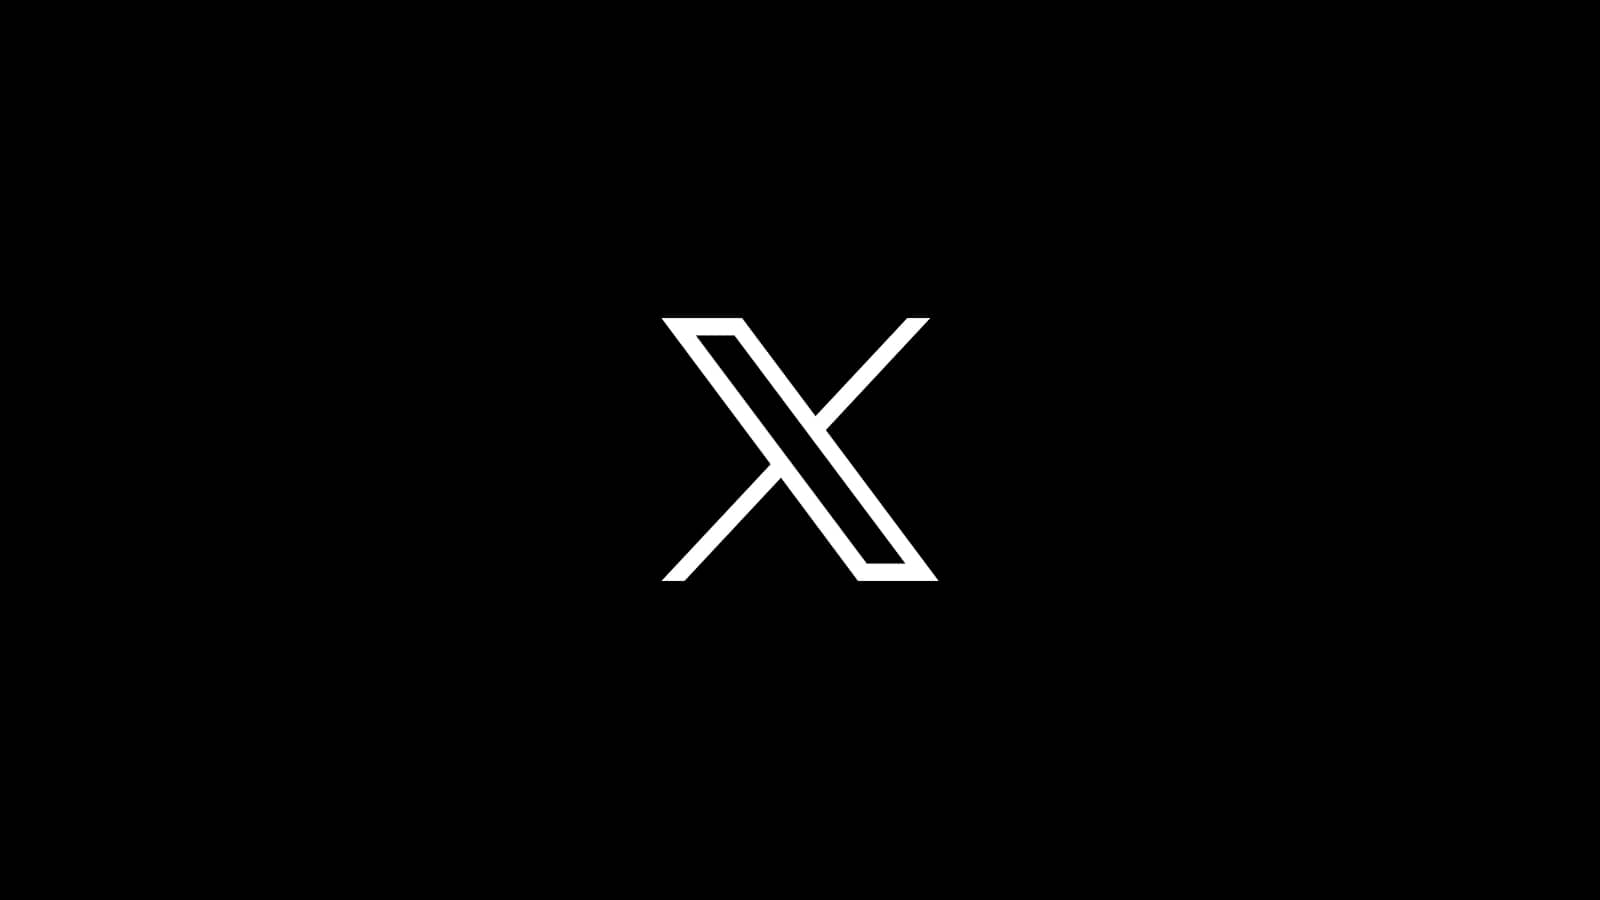 Twitterの鳥ロゴ、「X」に変更進む。コナミコマンドの裏技はまだ使えます